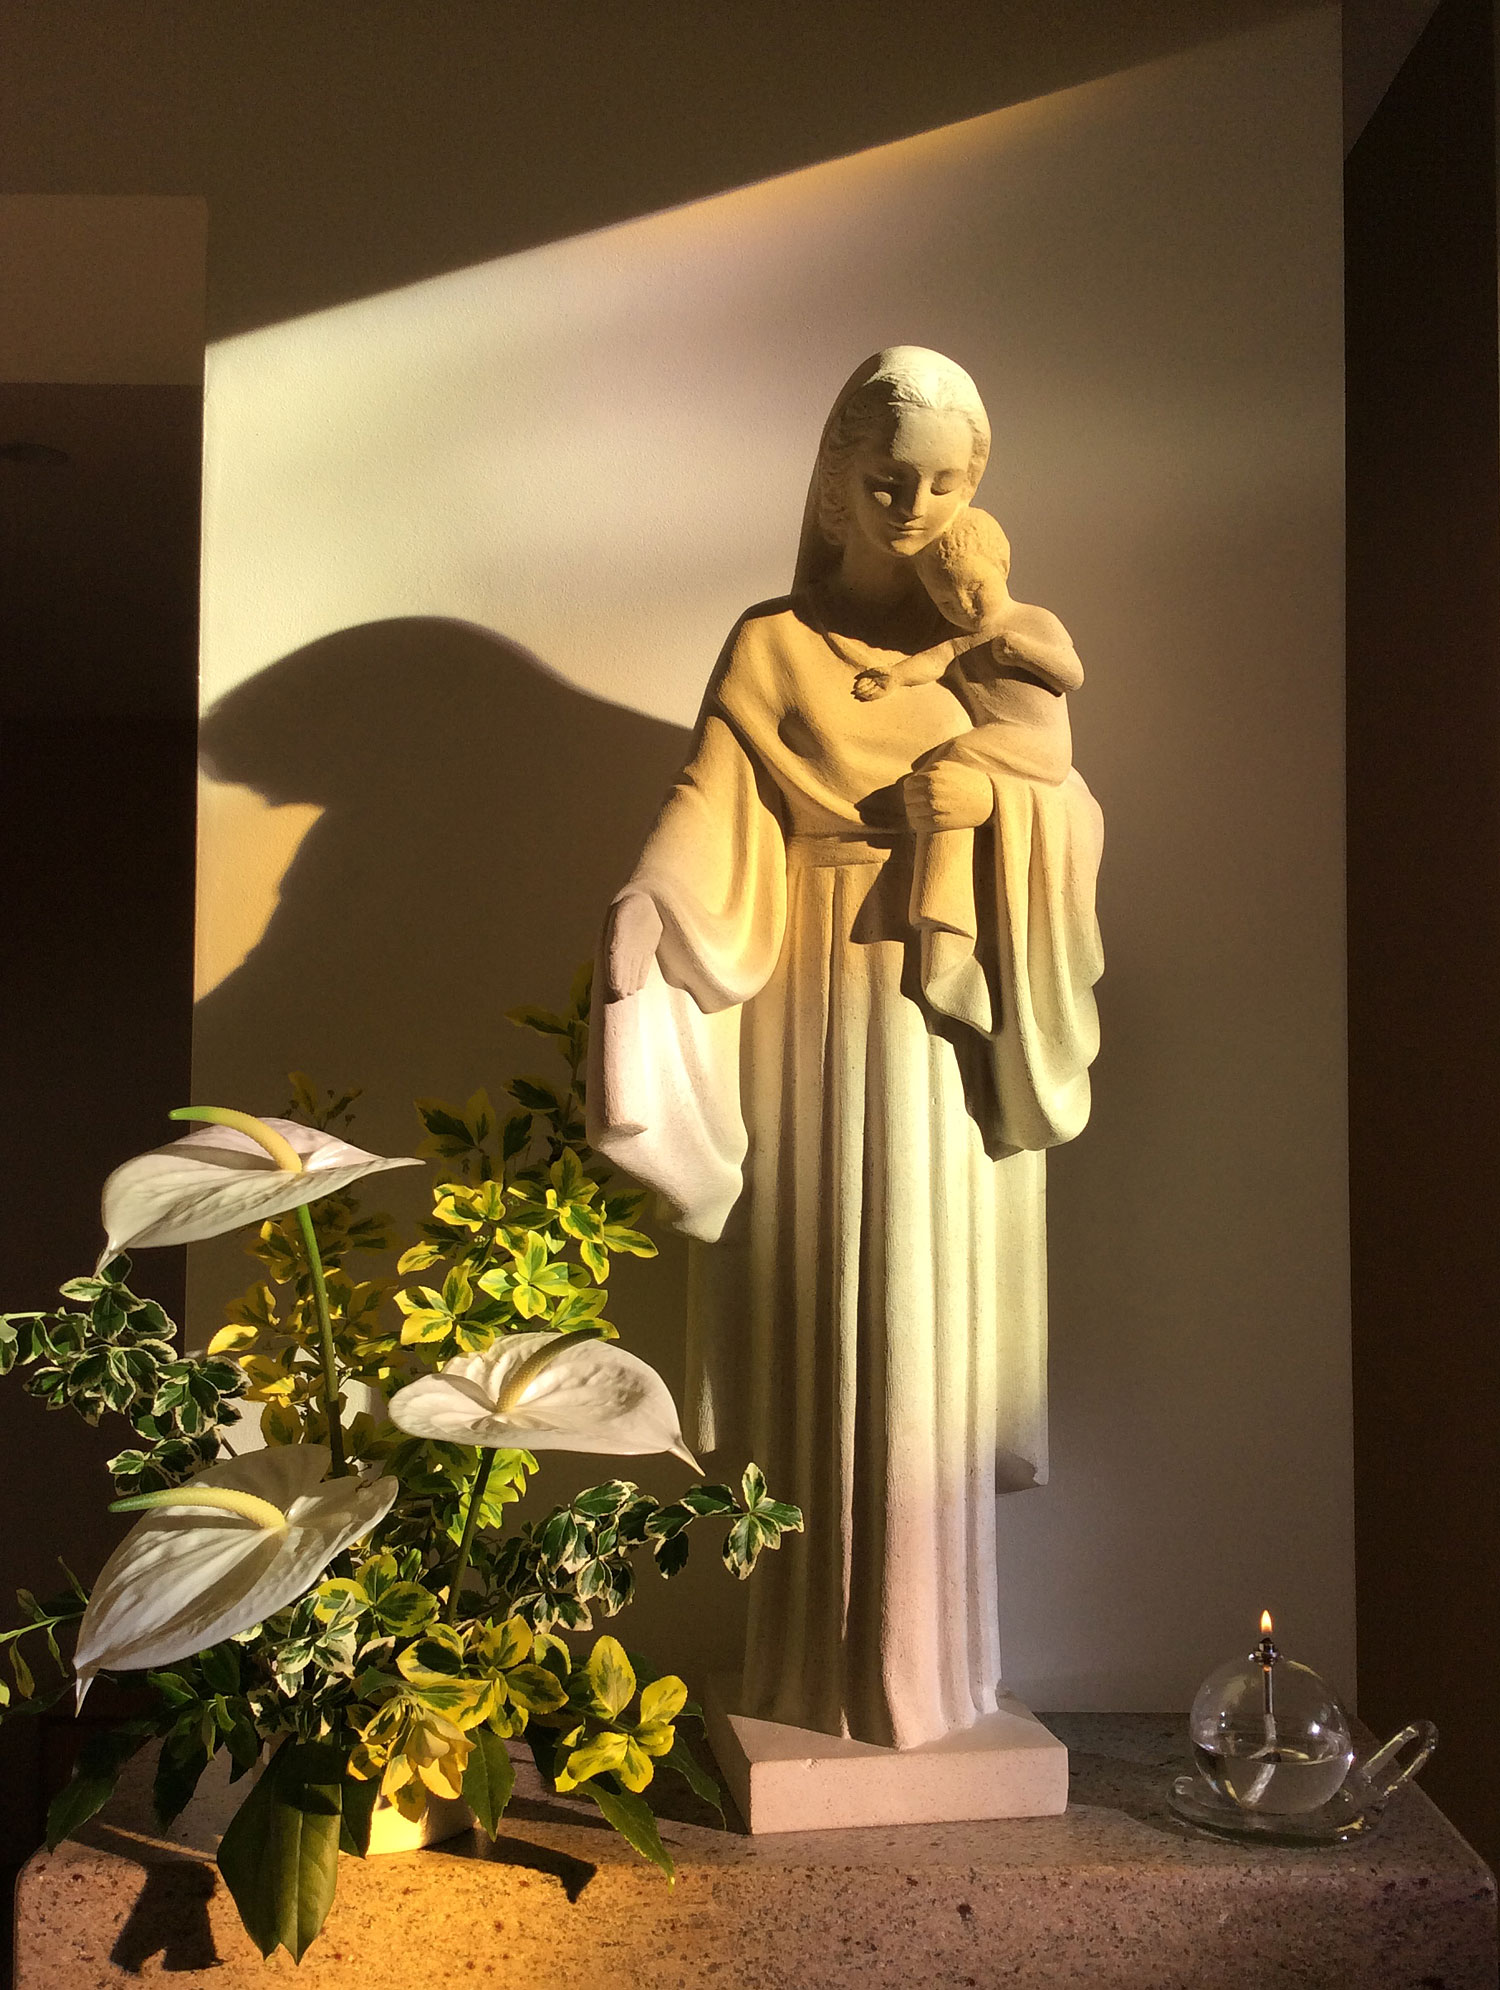 En ik eindig deze week met het moment dat de zon zo mooi op het Mariabeeld in de kapel scheen.